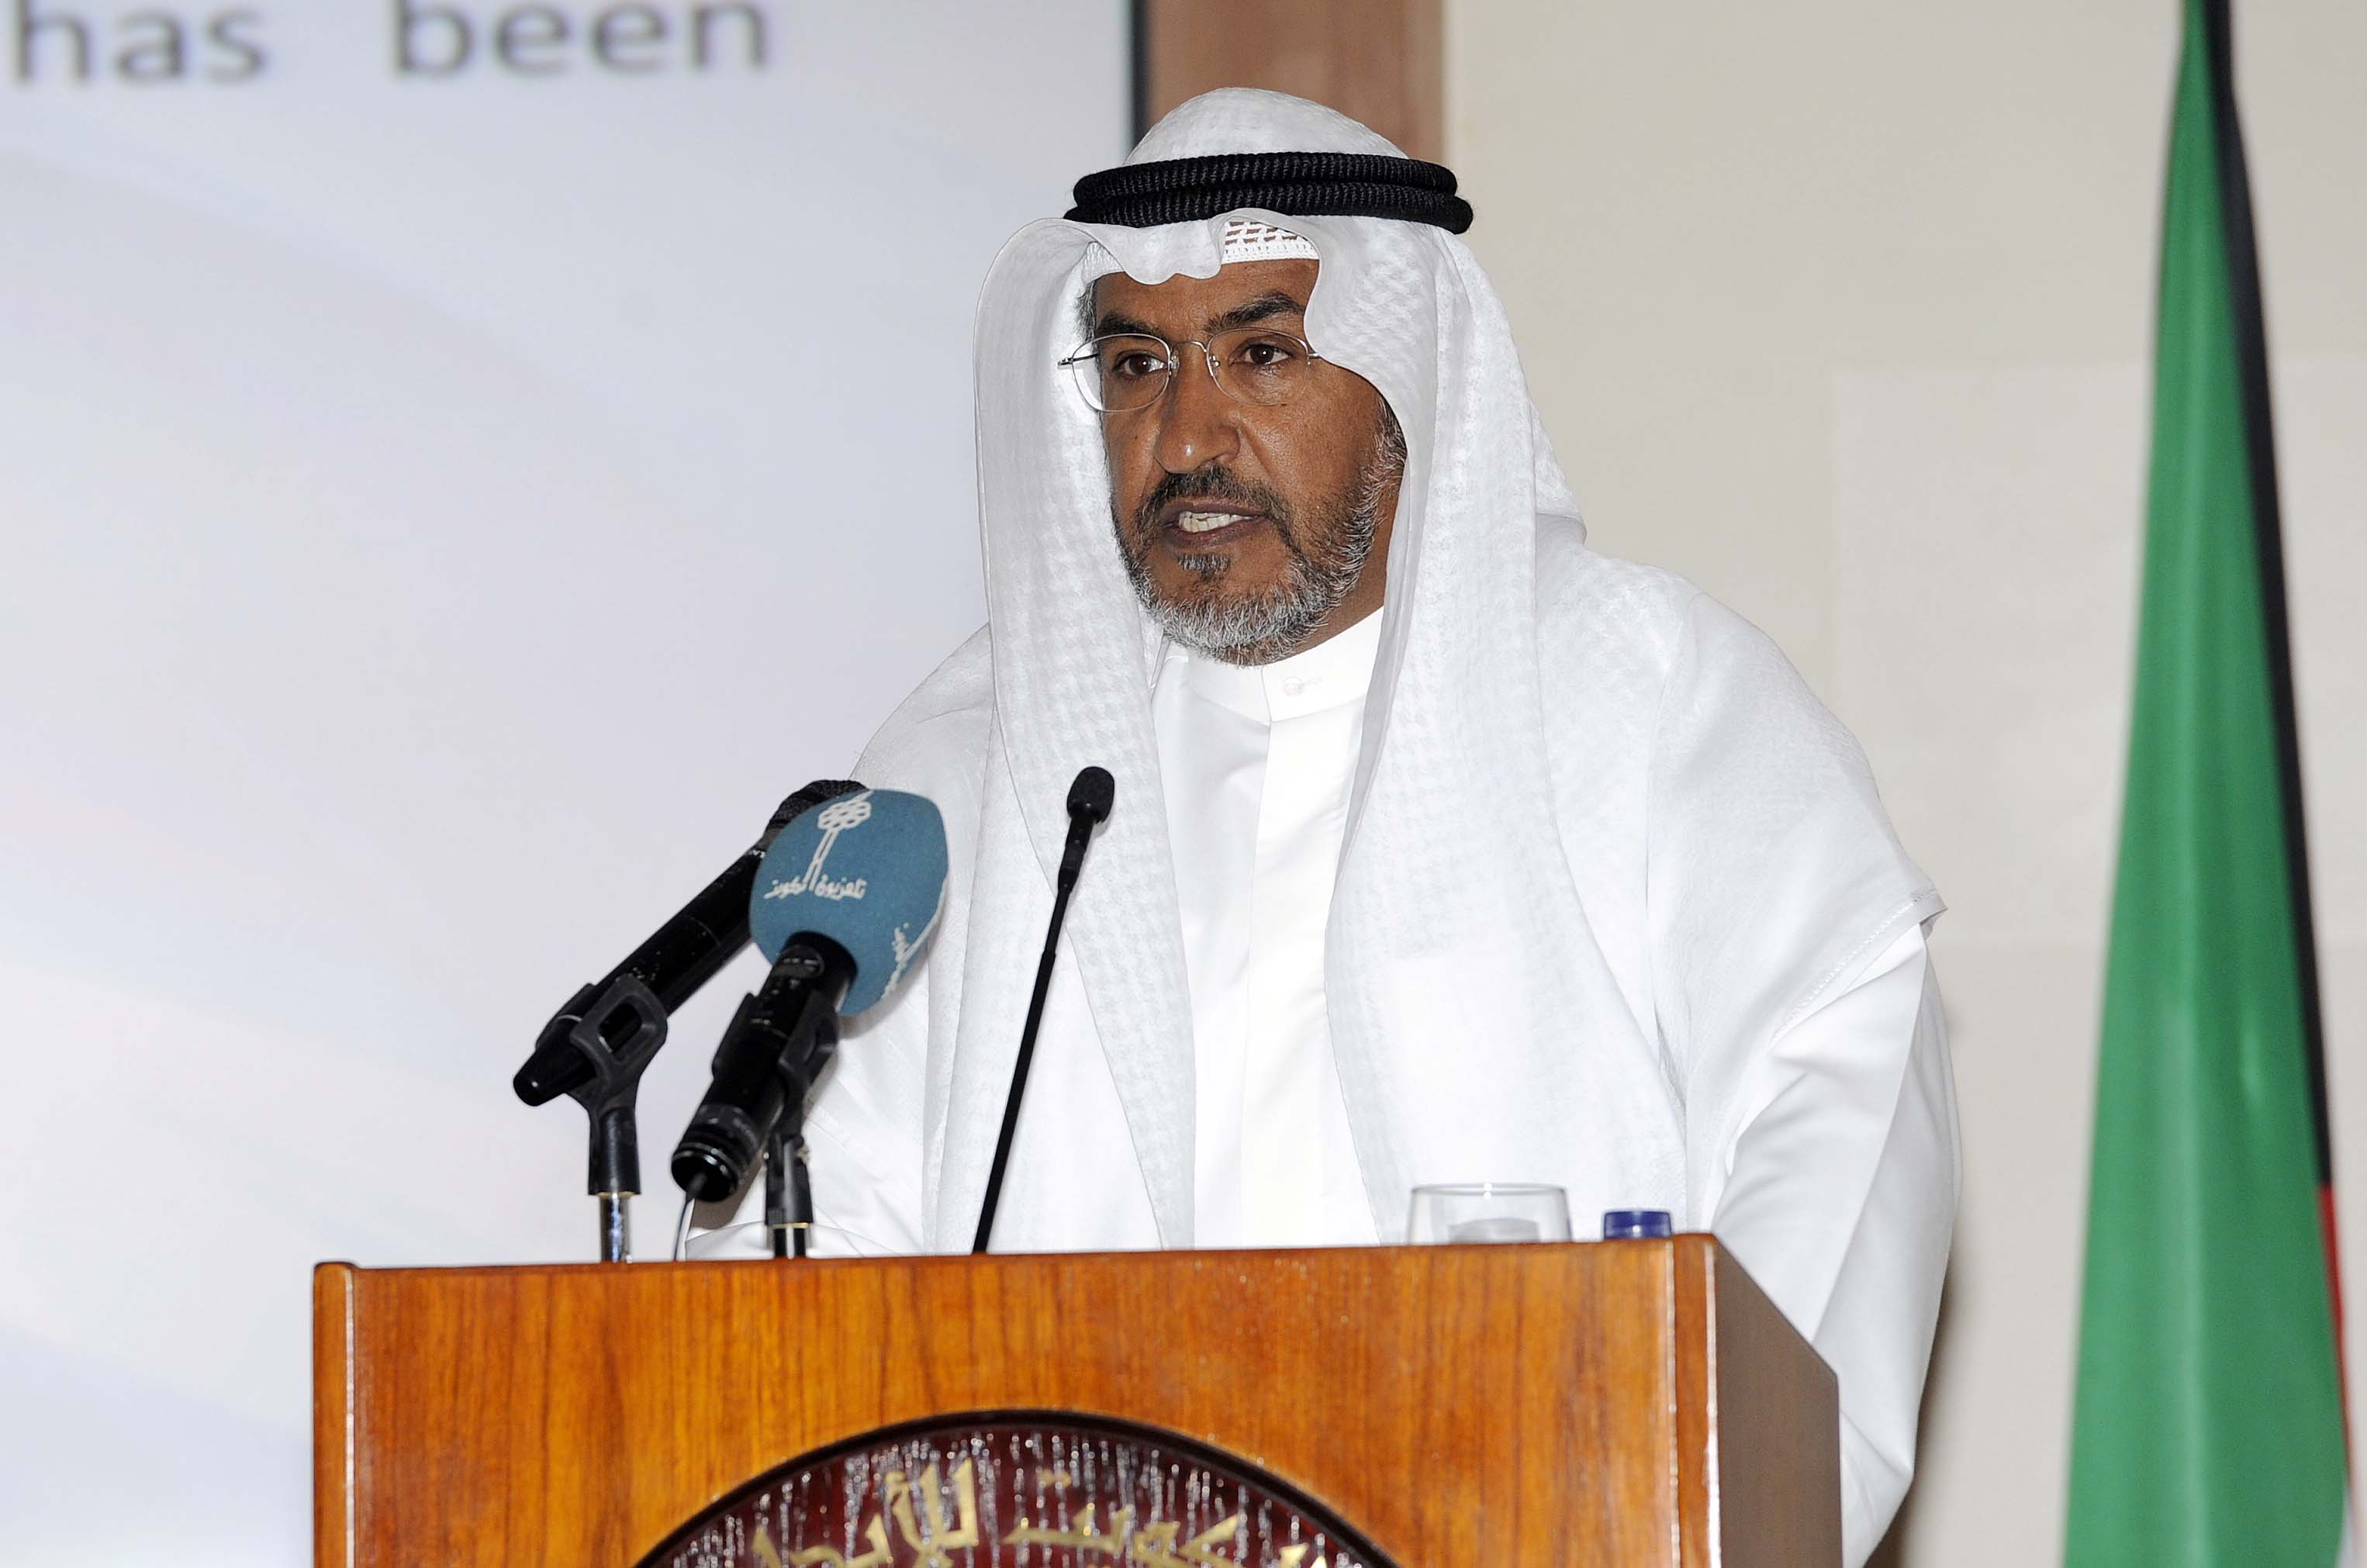 the institute's Director General Naji Al-Mutairi